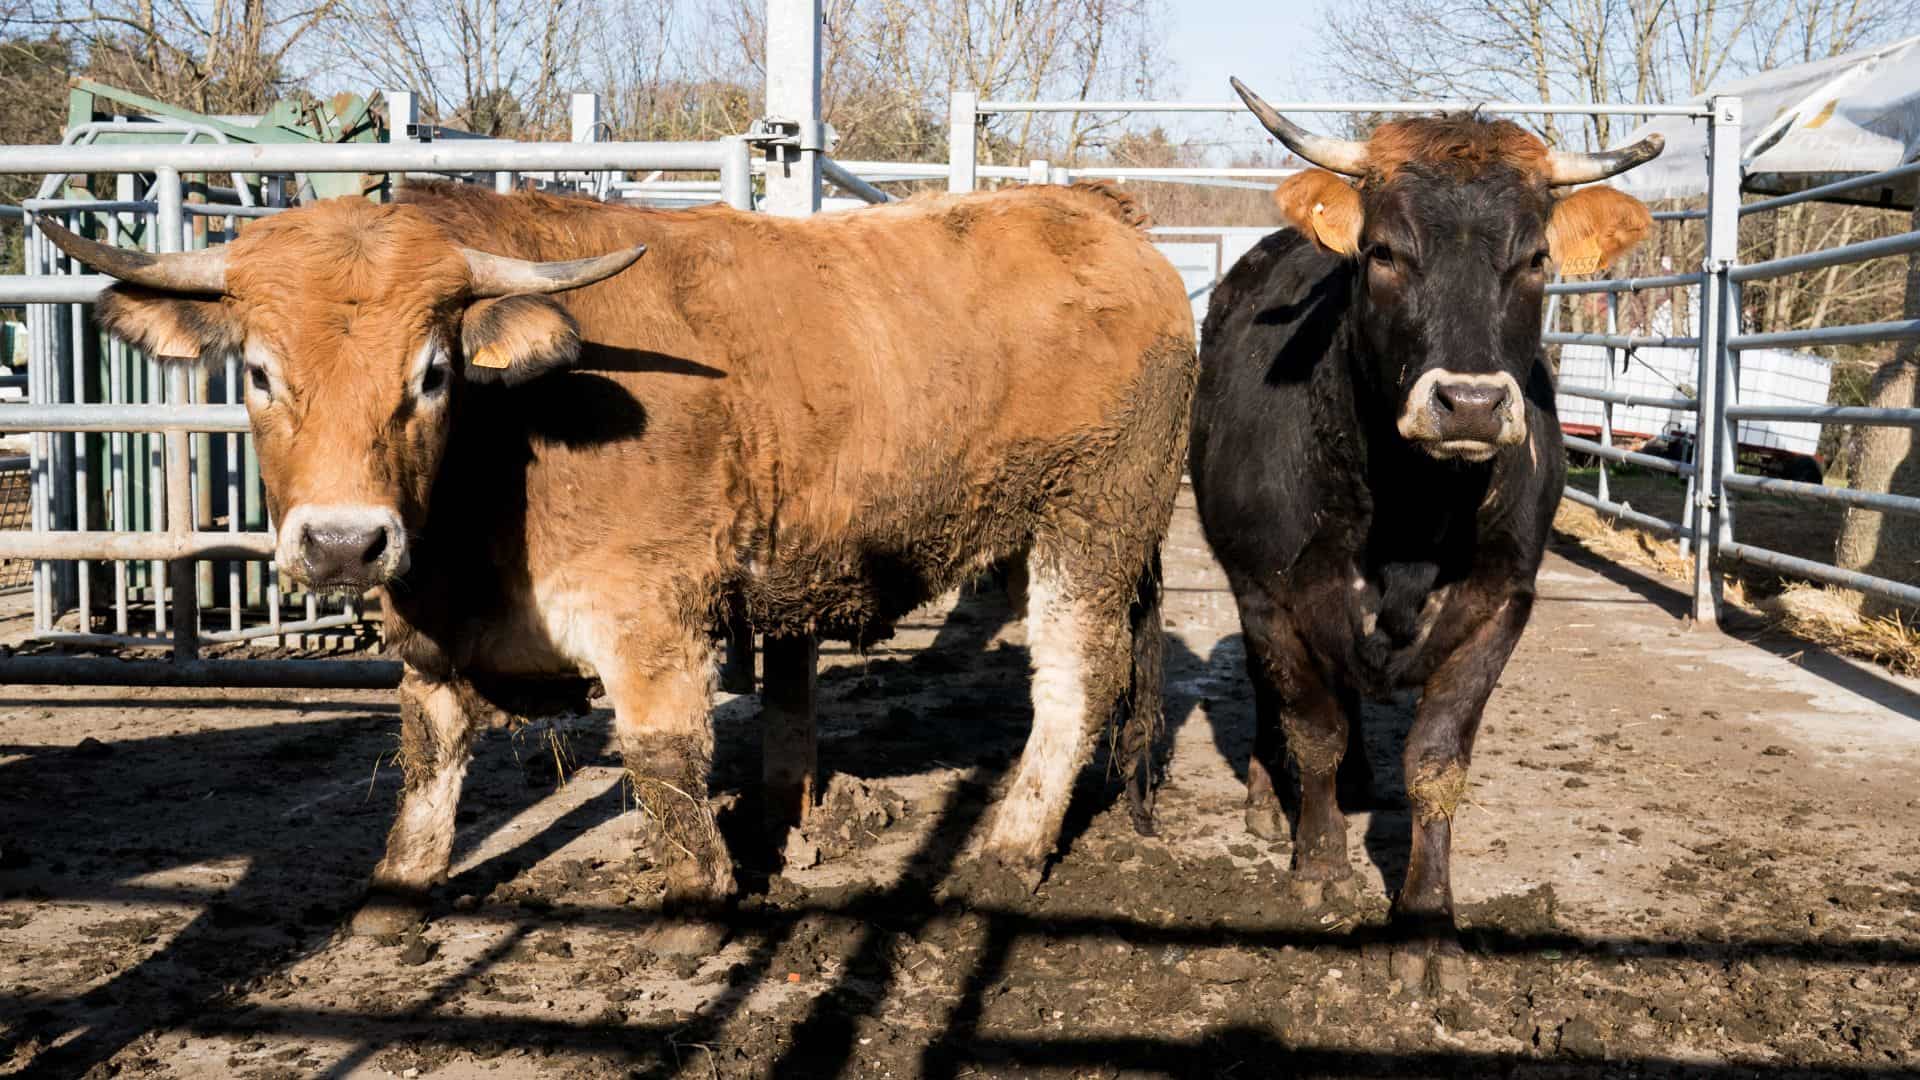 Élevage du Petit Bonheur Rixheim - Les bœufs et les autres animaux bénéficient d'un espace optimal pour leur épanouissement